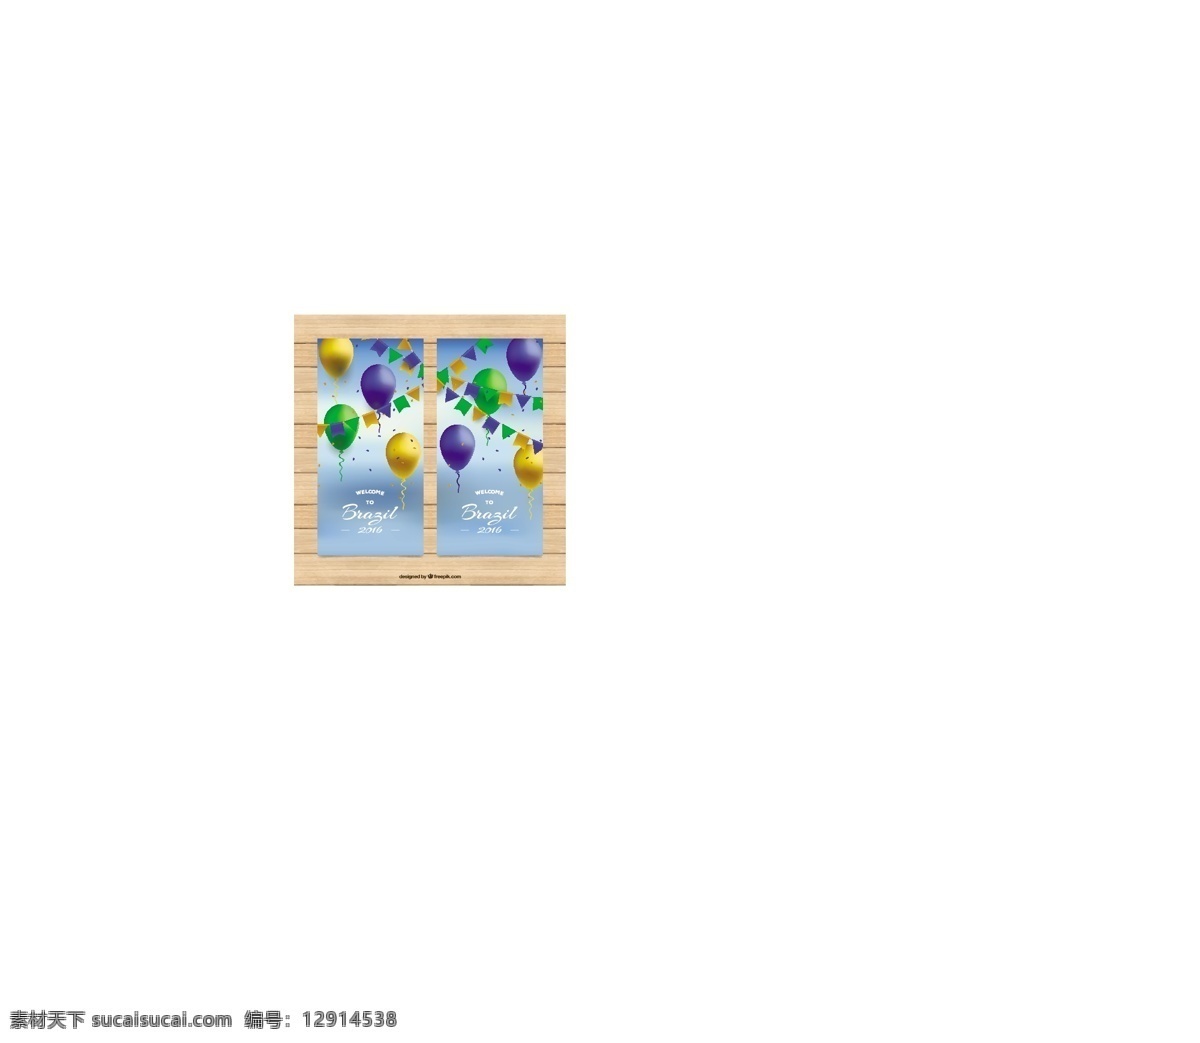 巴西 奥运会 现实主义 彩色 气球 横幅 横幅夏季 体育健身 颜色气球 rio2016 rio里约 2016 巴西奥运会 里约热内卢 夏季奥运会 31 届 夏季 黄色